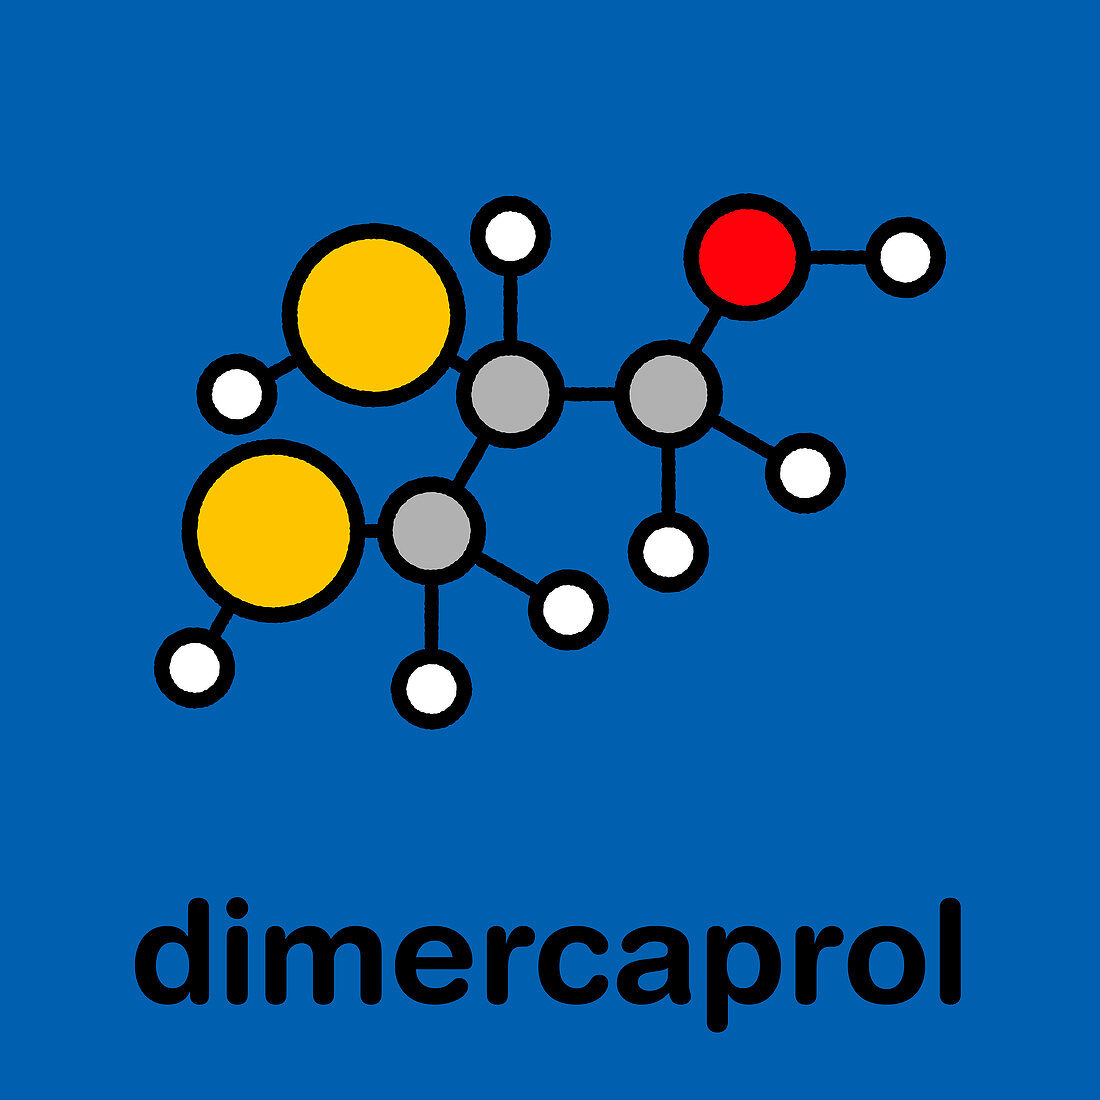 Dimercaprol metal poisoning antidote, molecular model